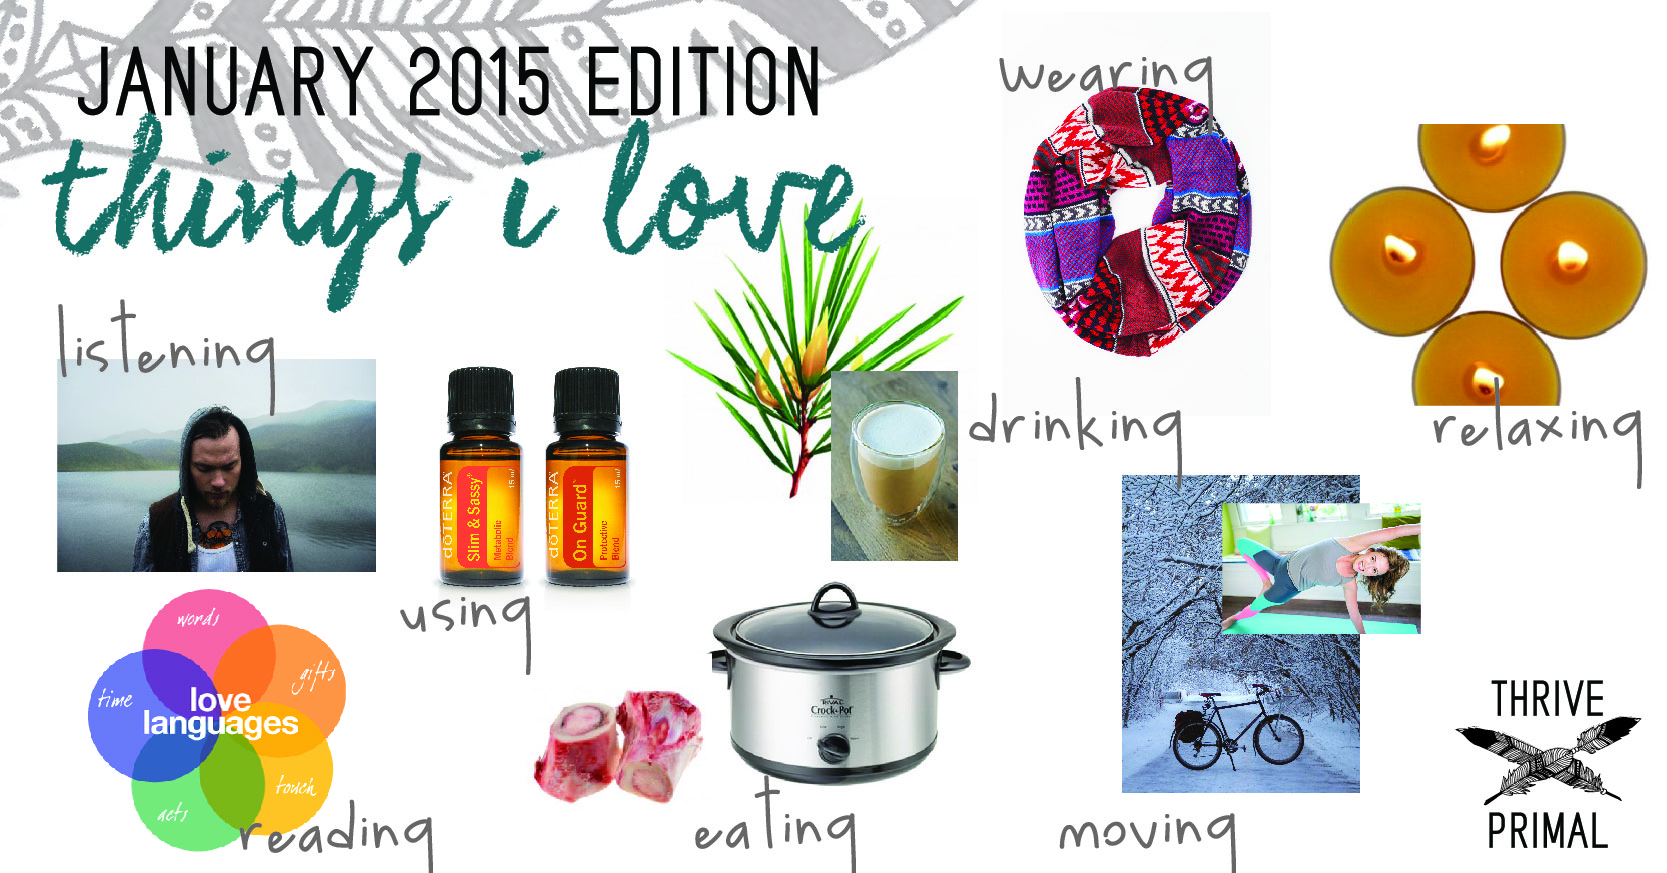 Thrive Primal - things i love jan 2015